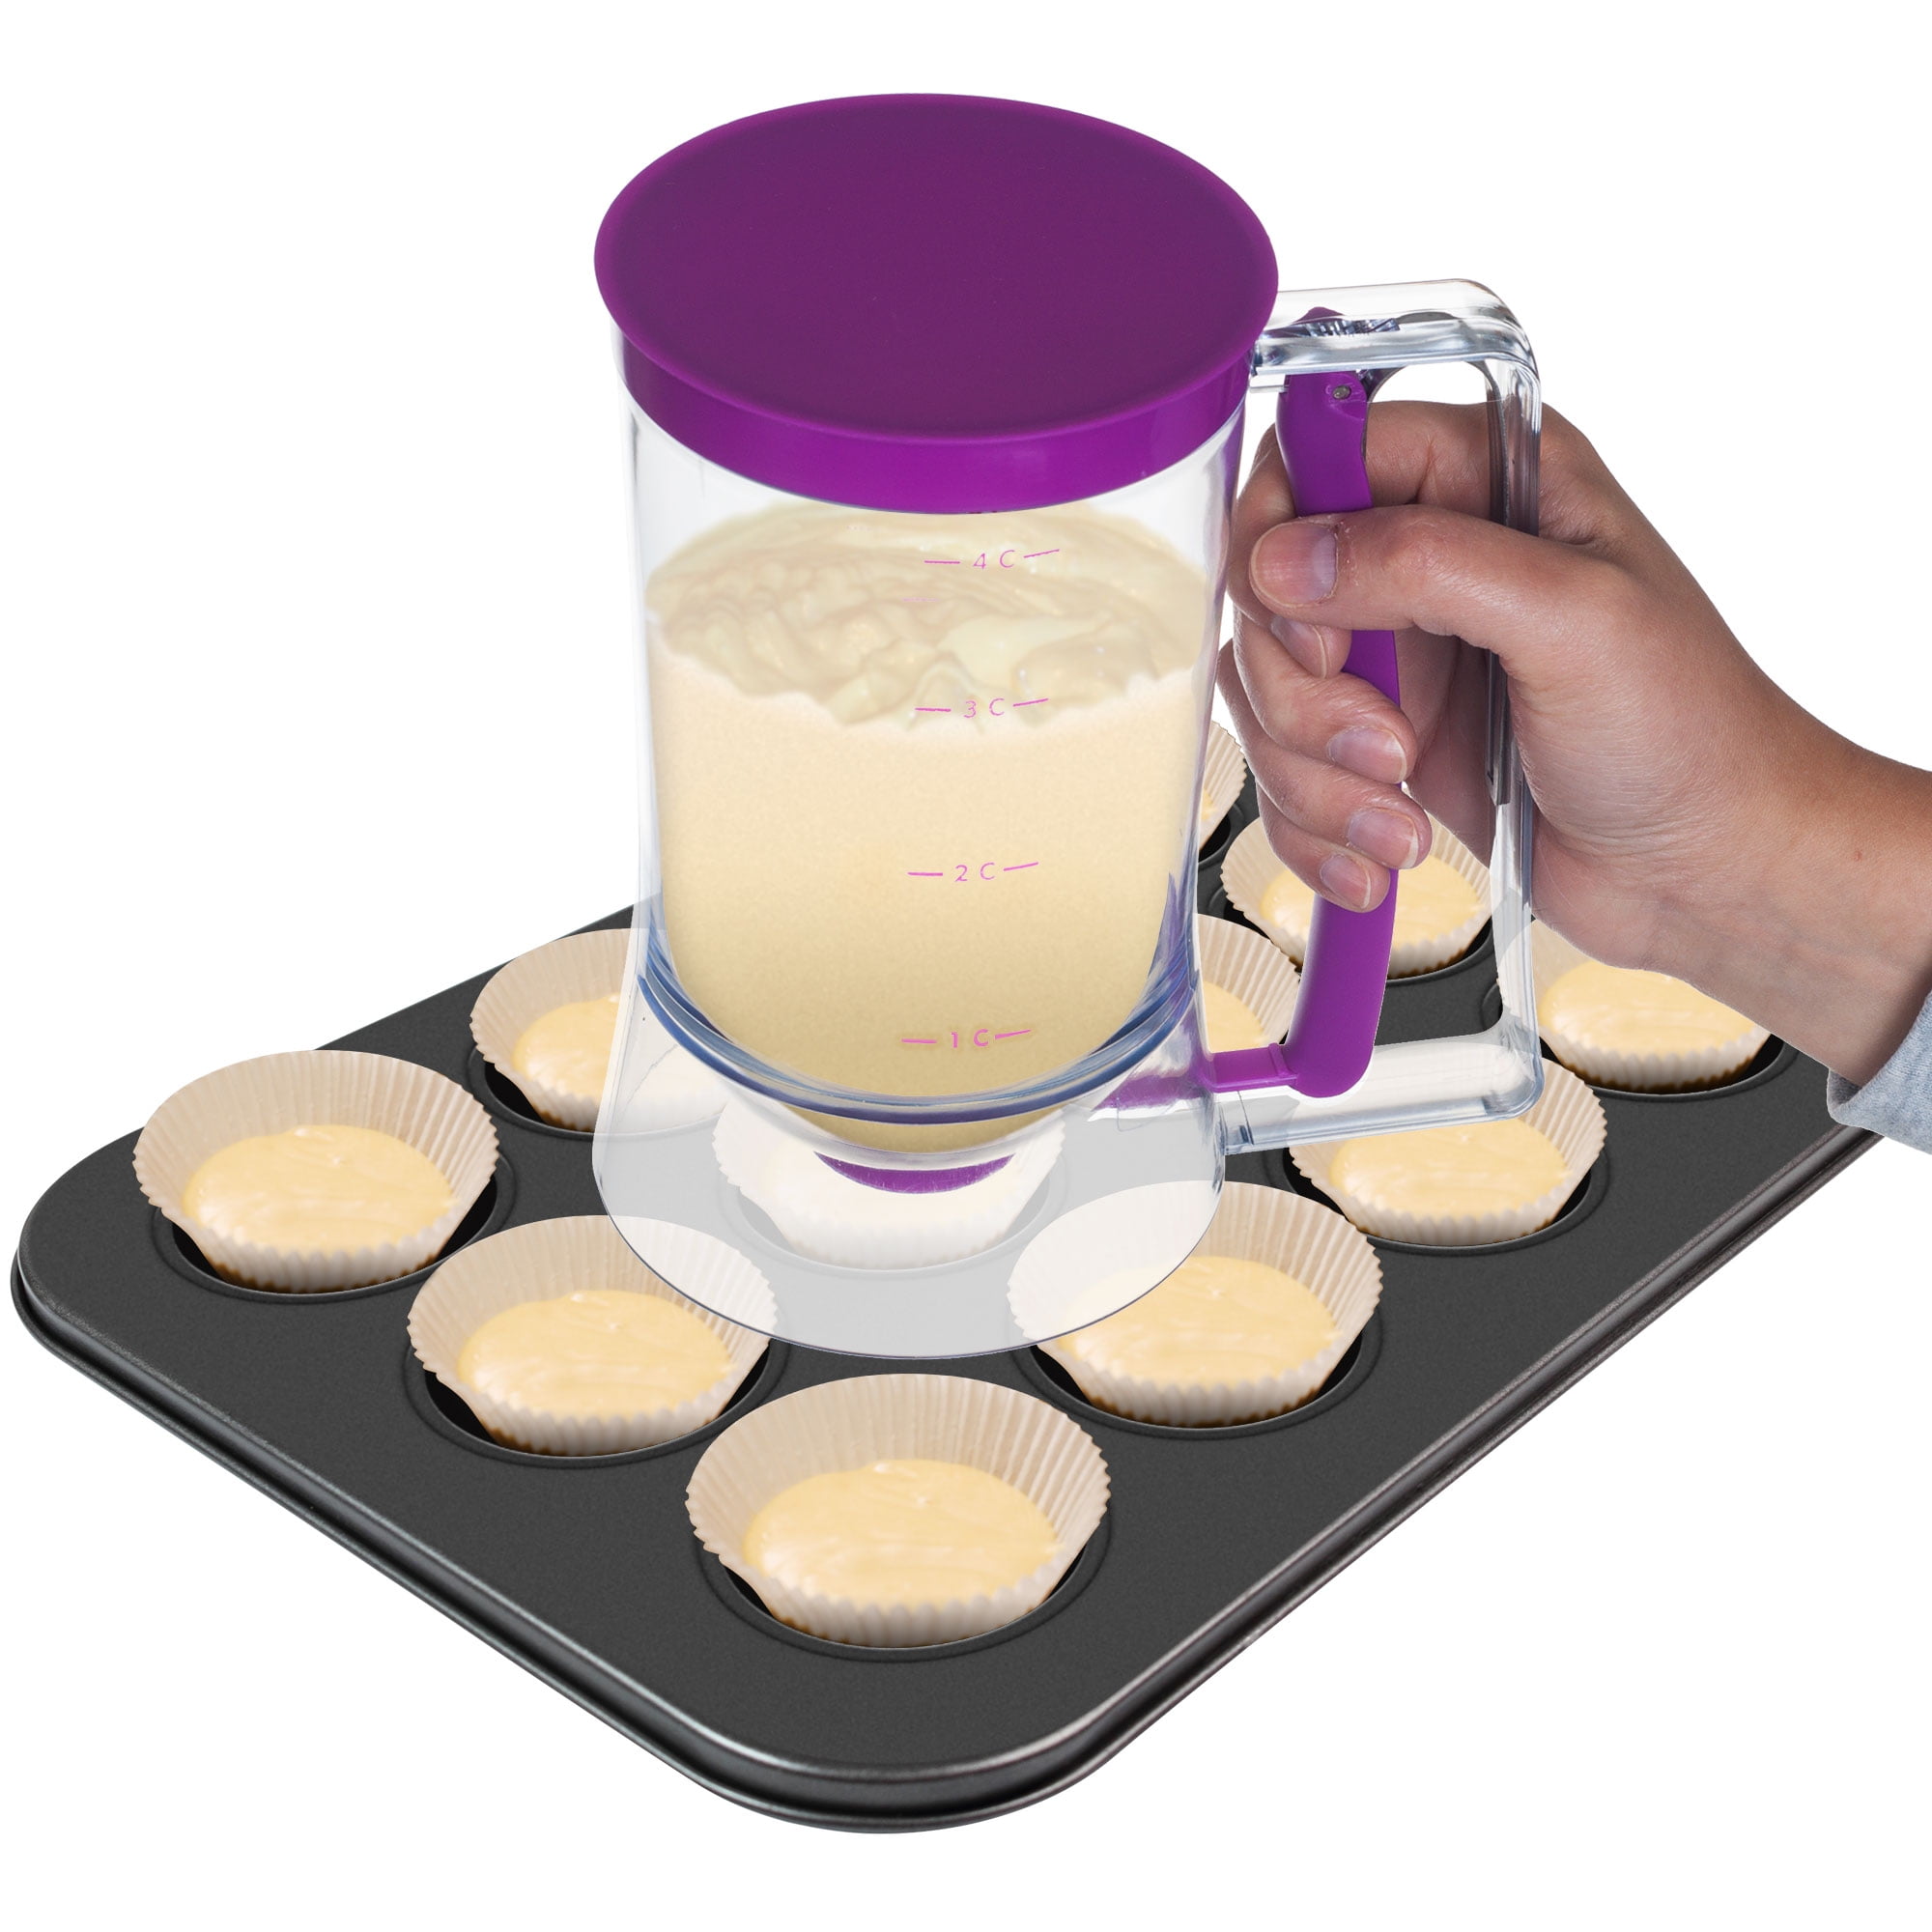 Chef Buddy Cupcake Pancake Crepe Batter Cake Mix Measuring Baking Bake Tool  VA 